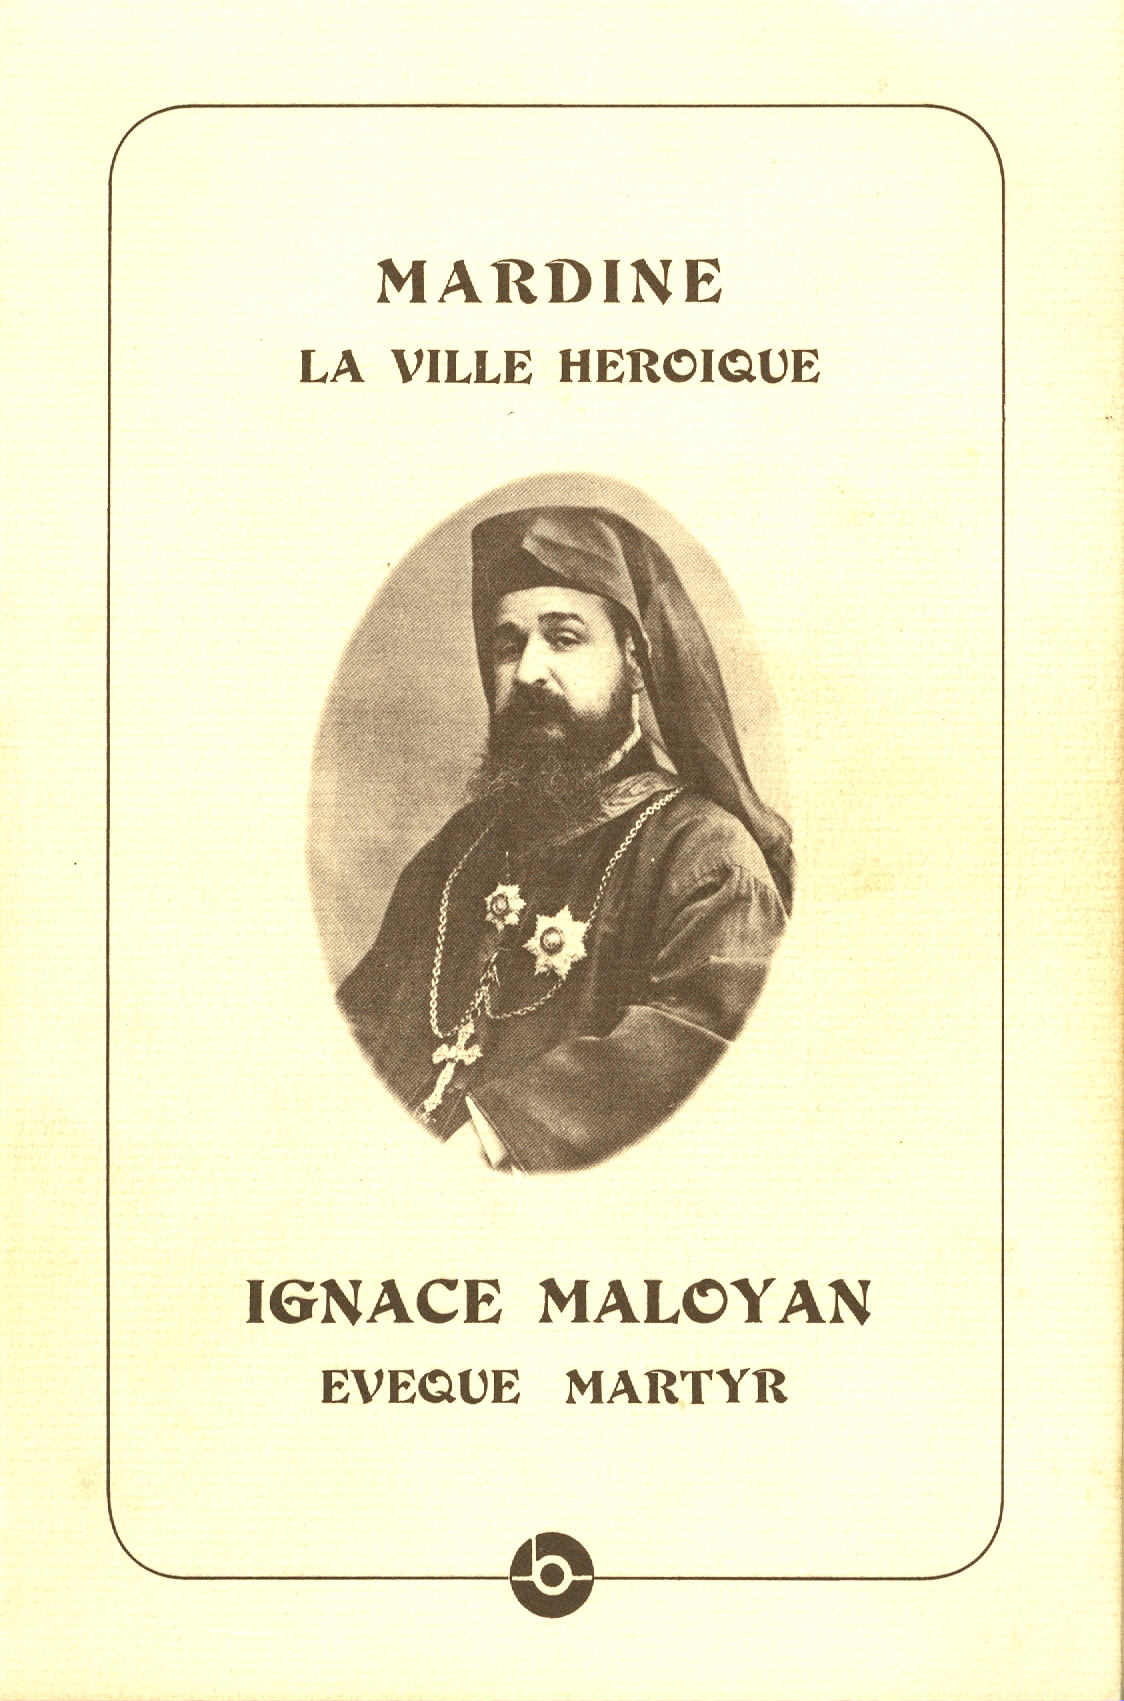 Couverture du livre du P. Hyacinthe <span class='Highlighted'> <span class='Highlighted'> simon </span></span>o. p. (Maison Naaman pour la culture, Jounieh, Liban, 1991)